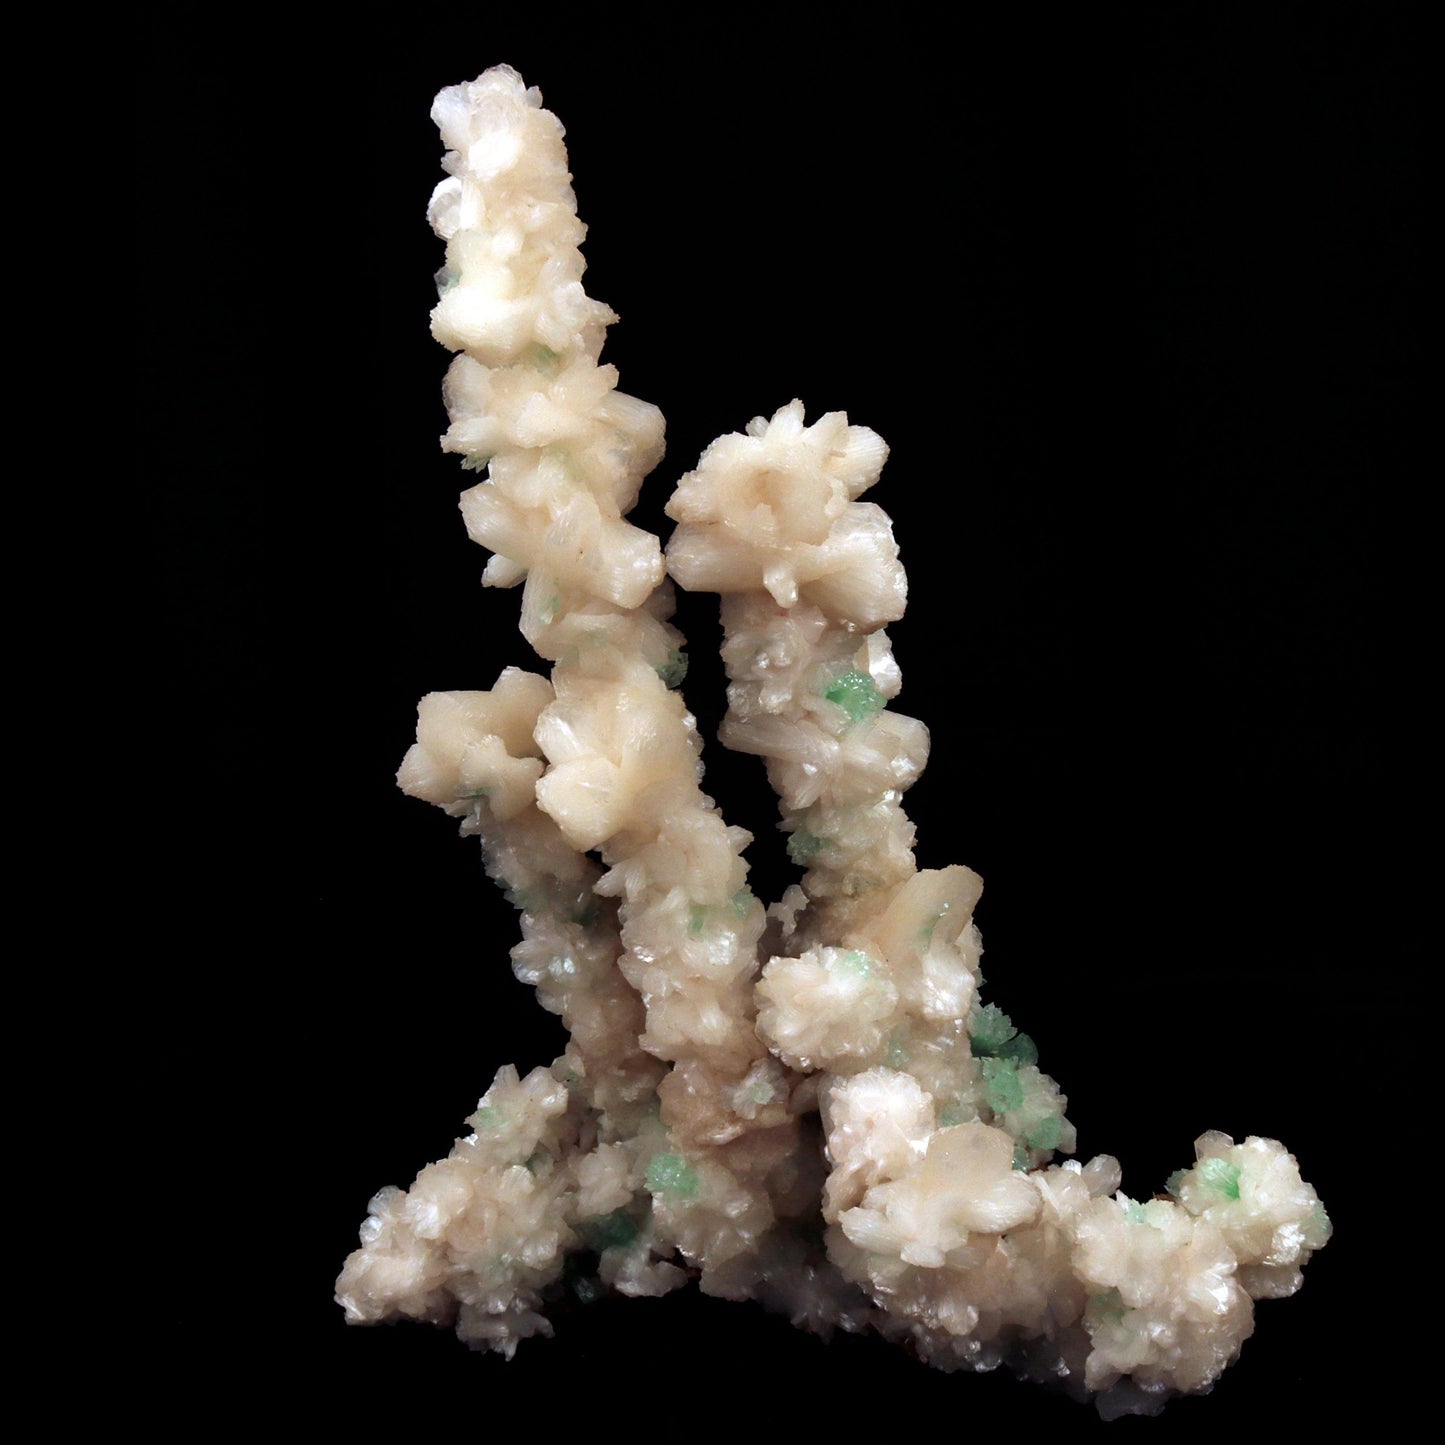 Green Apophyllite Crystals with Stilbite on Heulandite Bush Formation #W35 Apophyllite & Heulandite Superb Minerals 